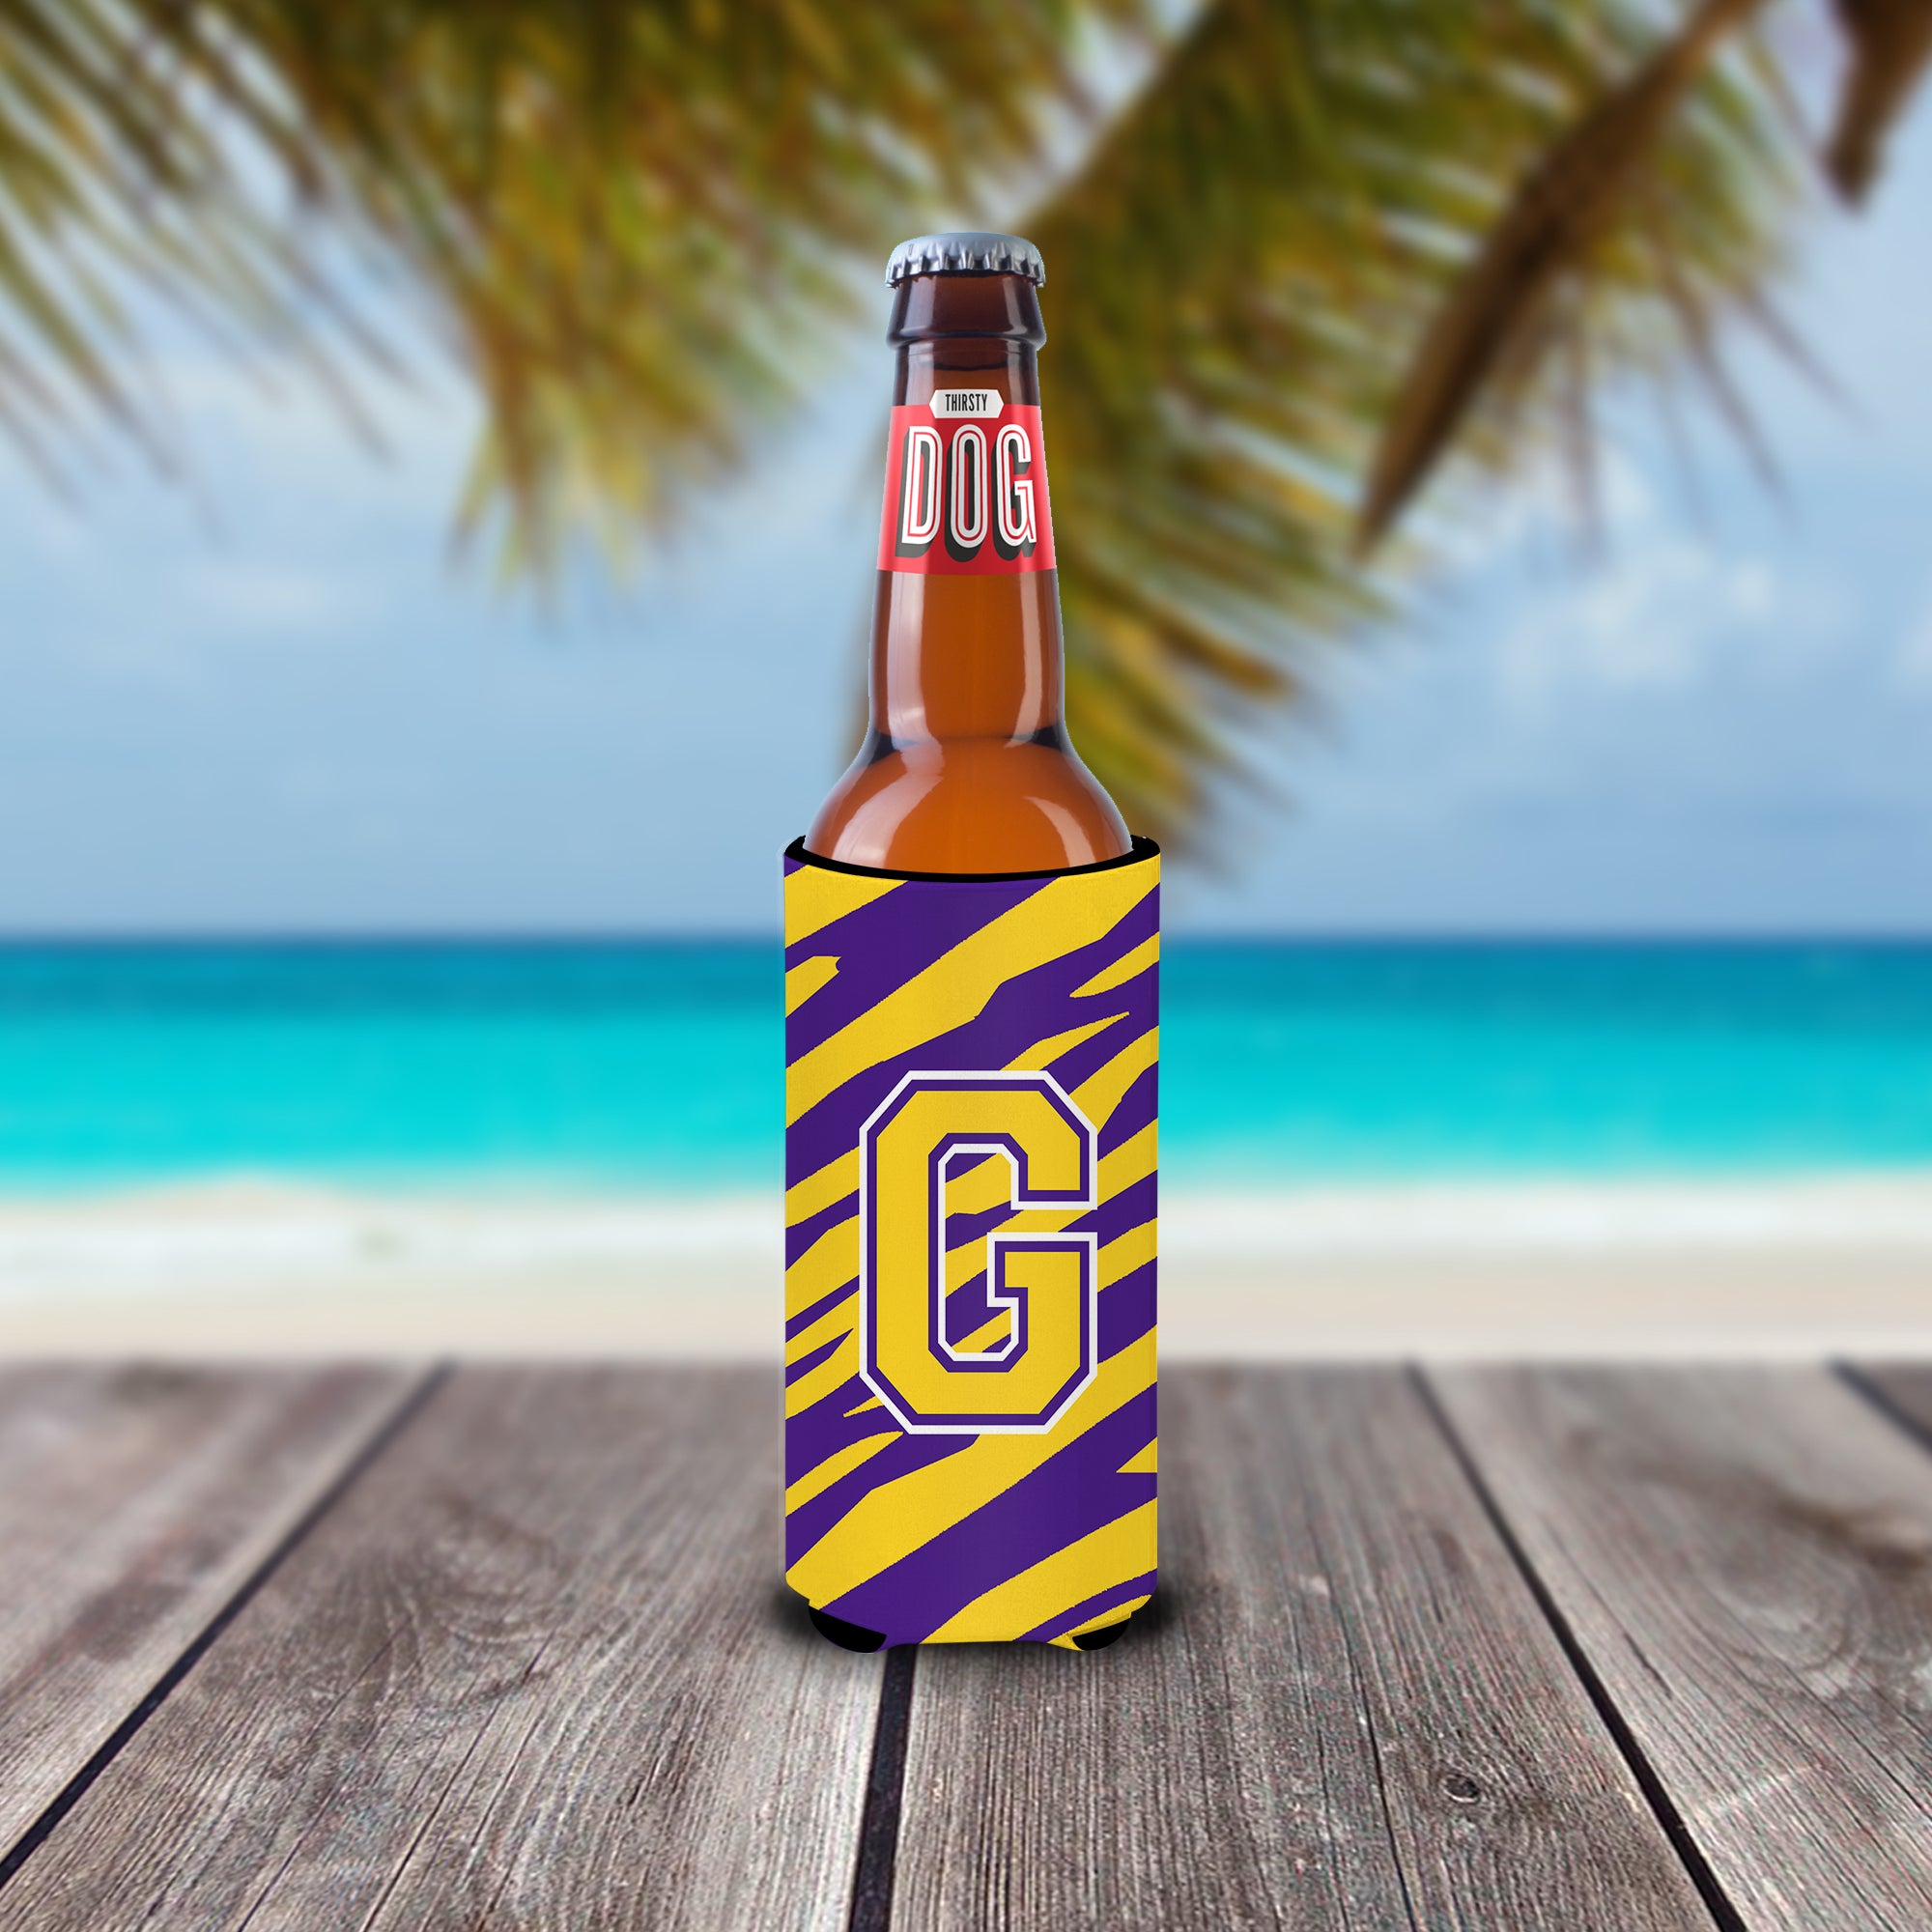 Monogram - Tiger Stripe - Purple Gold  Letter G Ultra Beverage Insulators for slim cans CJ1022-GMUK